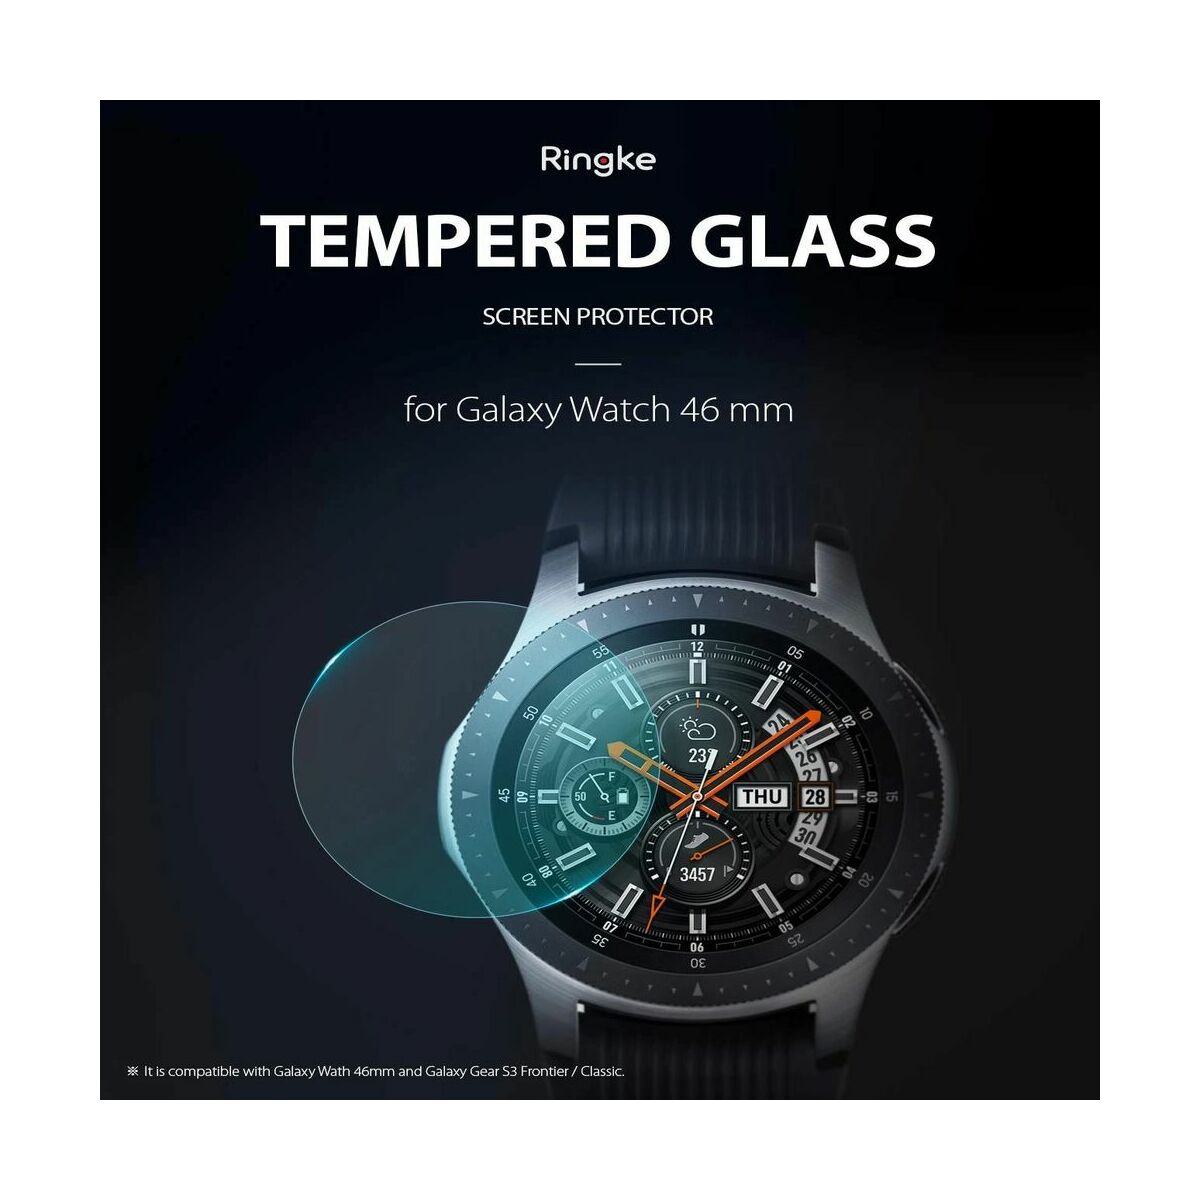 Ringke Galaxy Watch 46mm / Gear S3 kijelzővédő üveg, Invisible Defender ID Edzett üveg (3+1 csomag), Átlátszó